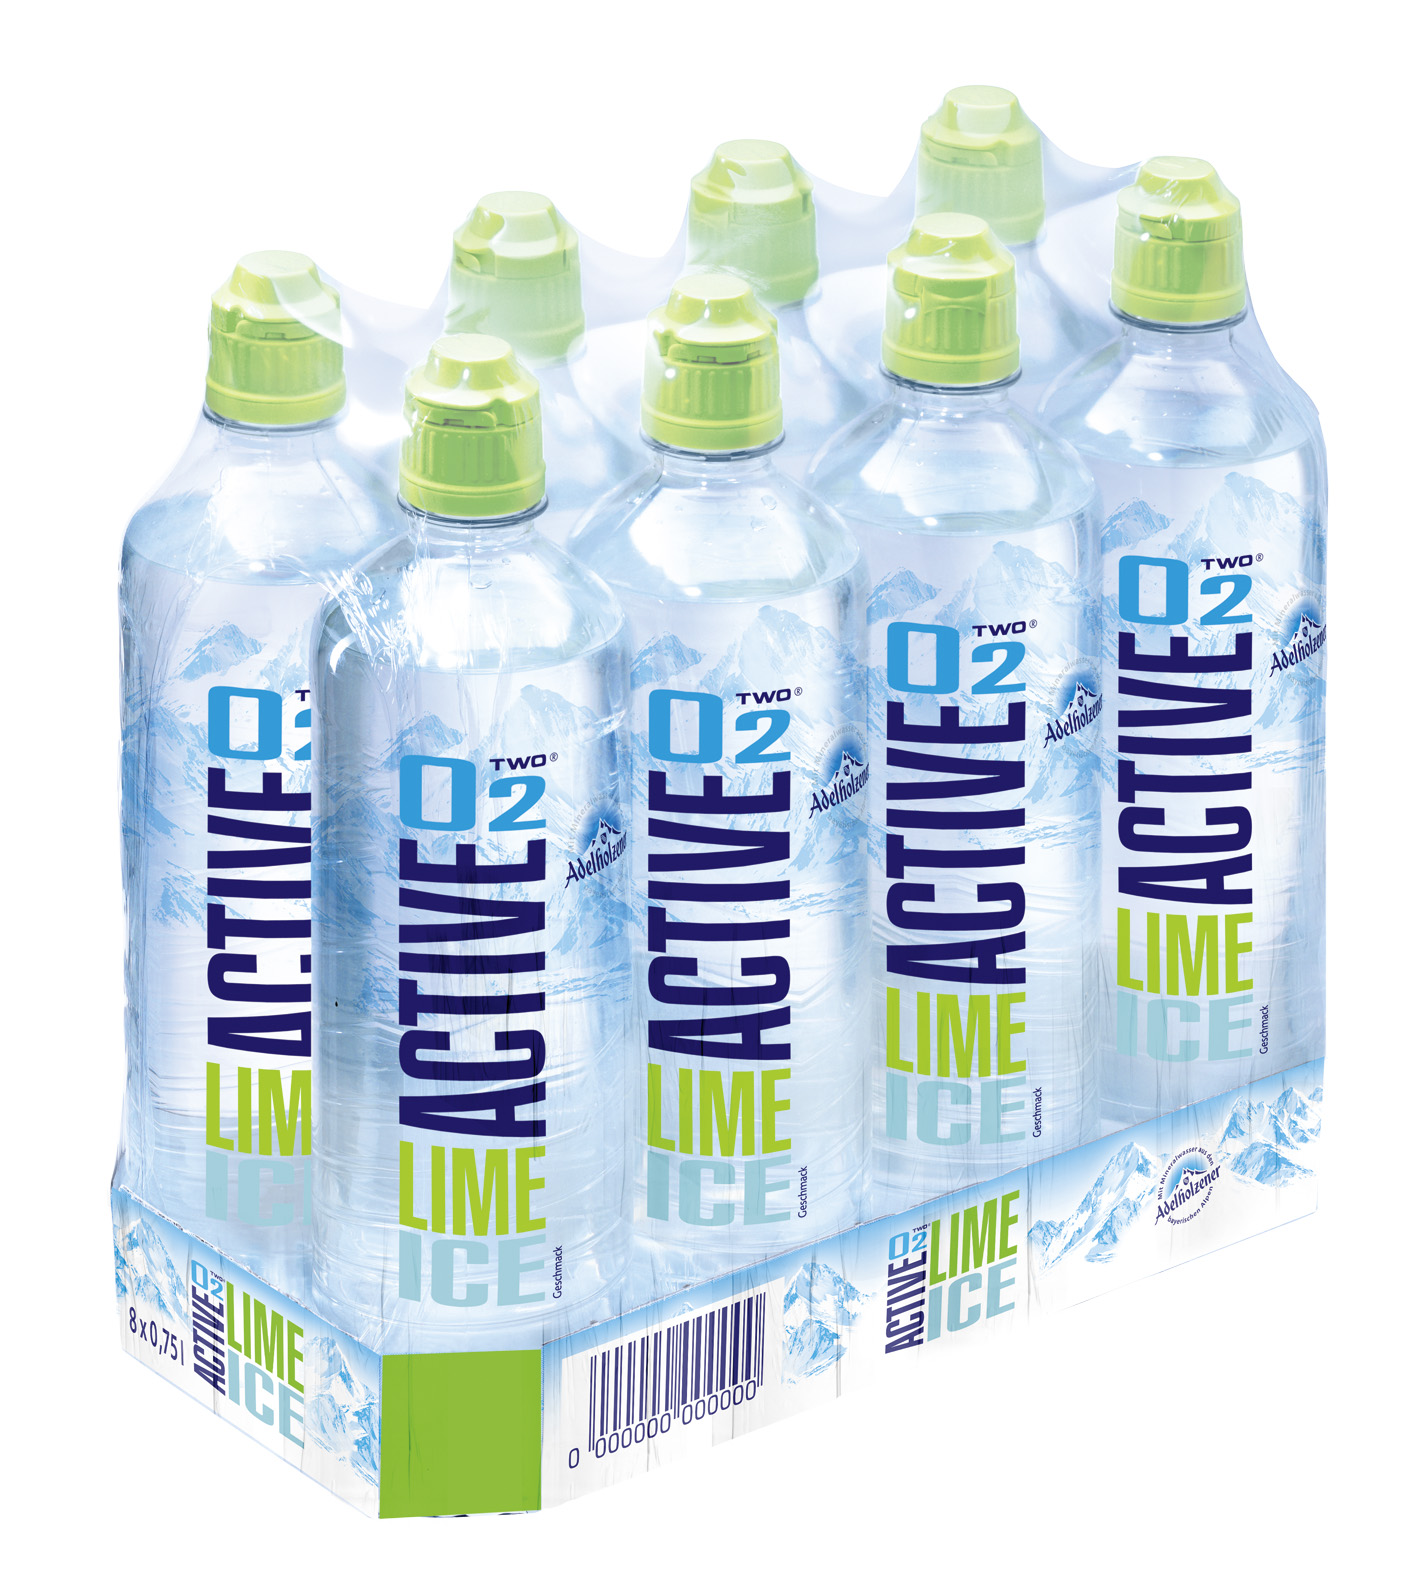 Active O2 Lime Ice